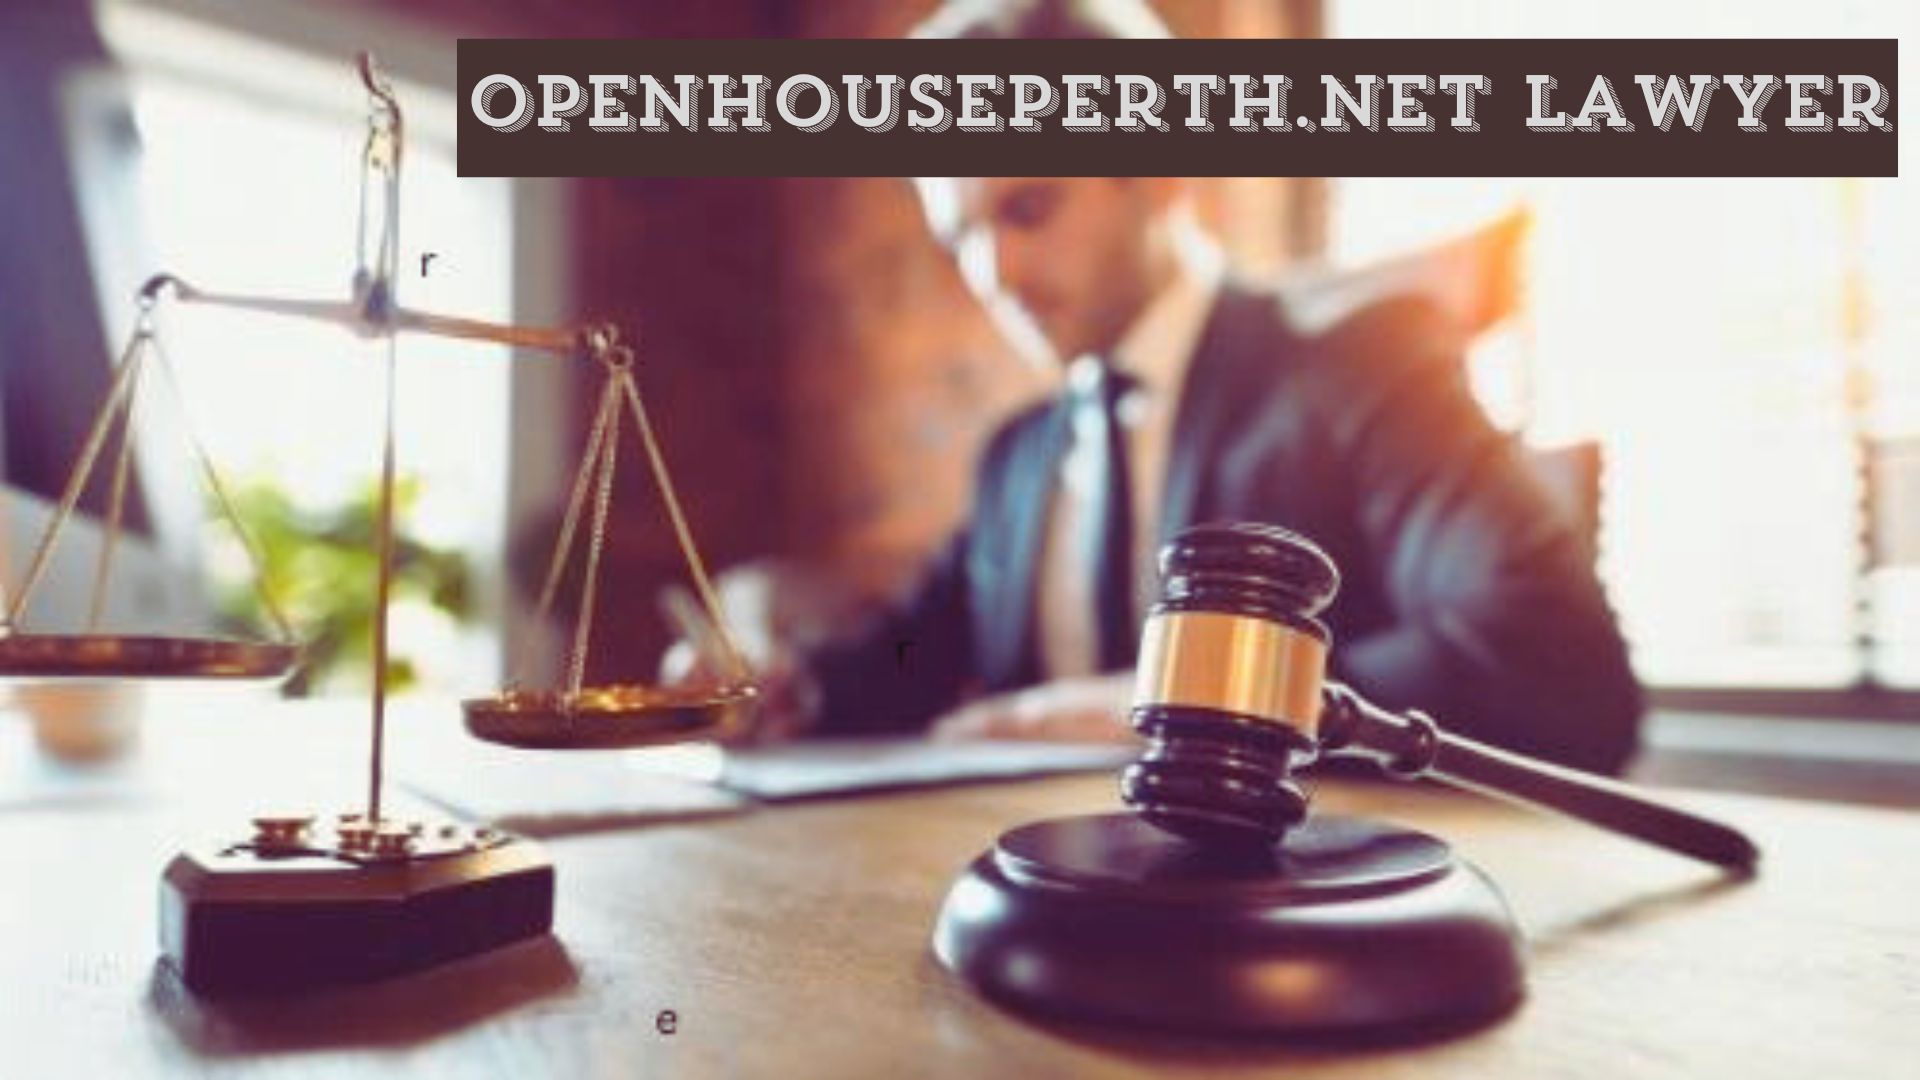 OpenHousePerth.net Lawyer